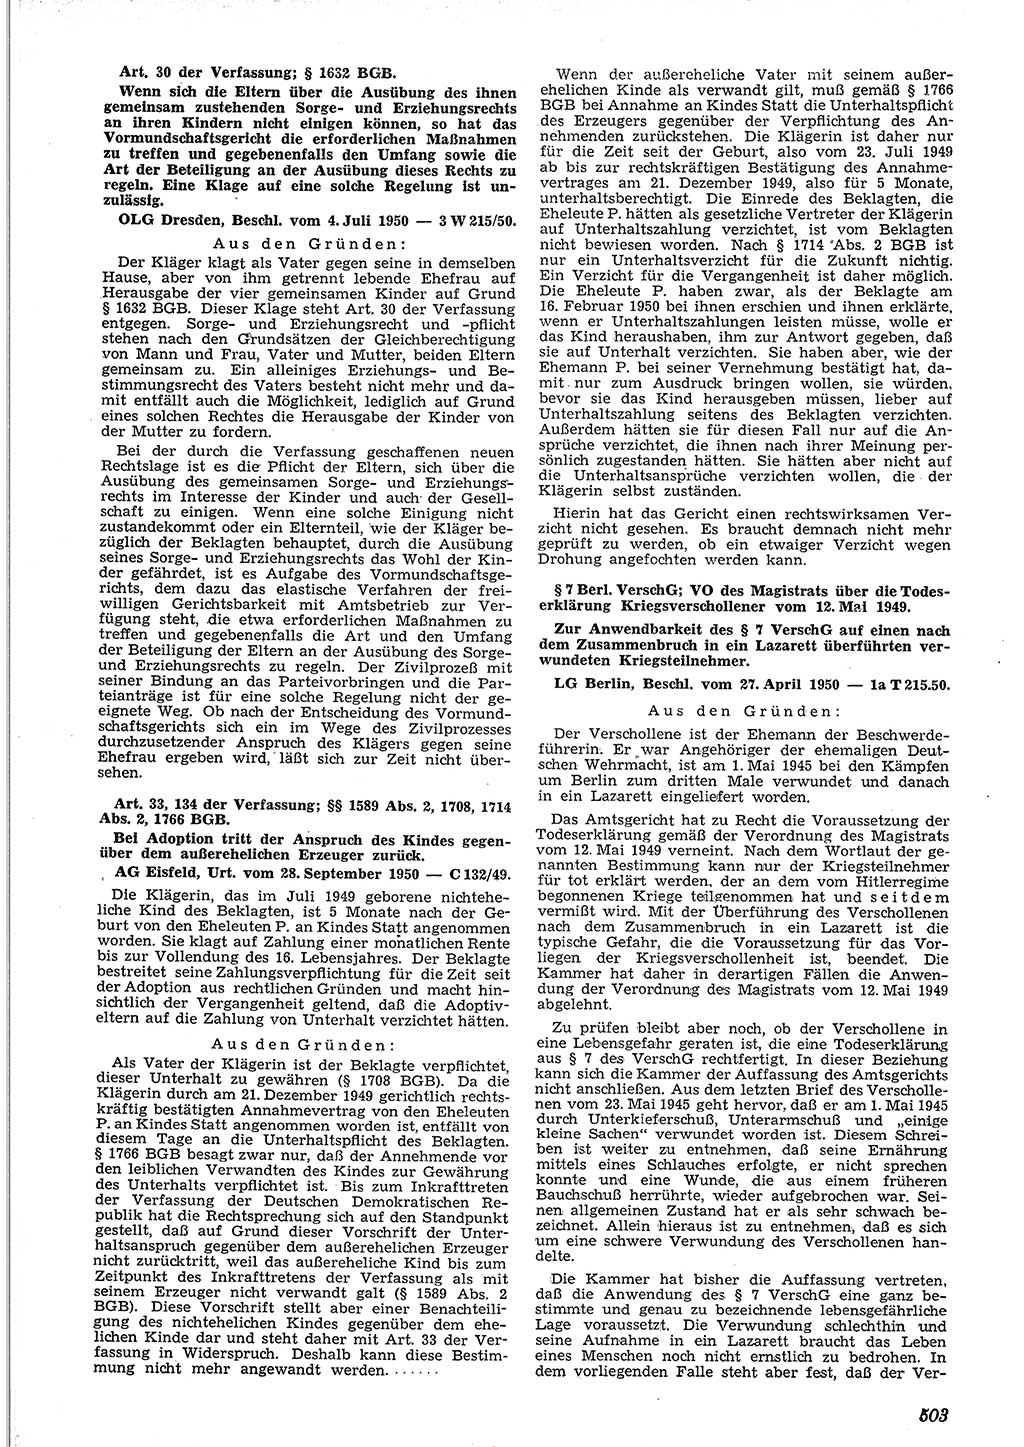 Neue Justiz (NJ), Zeitschrift für Recht und Rechtswissenschaft [Deutsche Demokratische Republik (DDR)], 4. Jahrgang 1950, Seite 503 (NJ DDR 1950, S. 503)